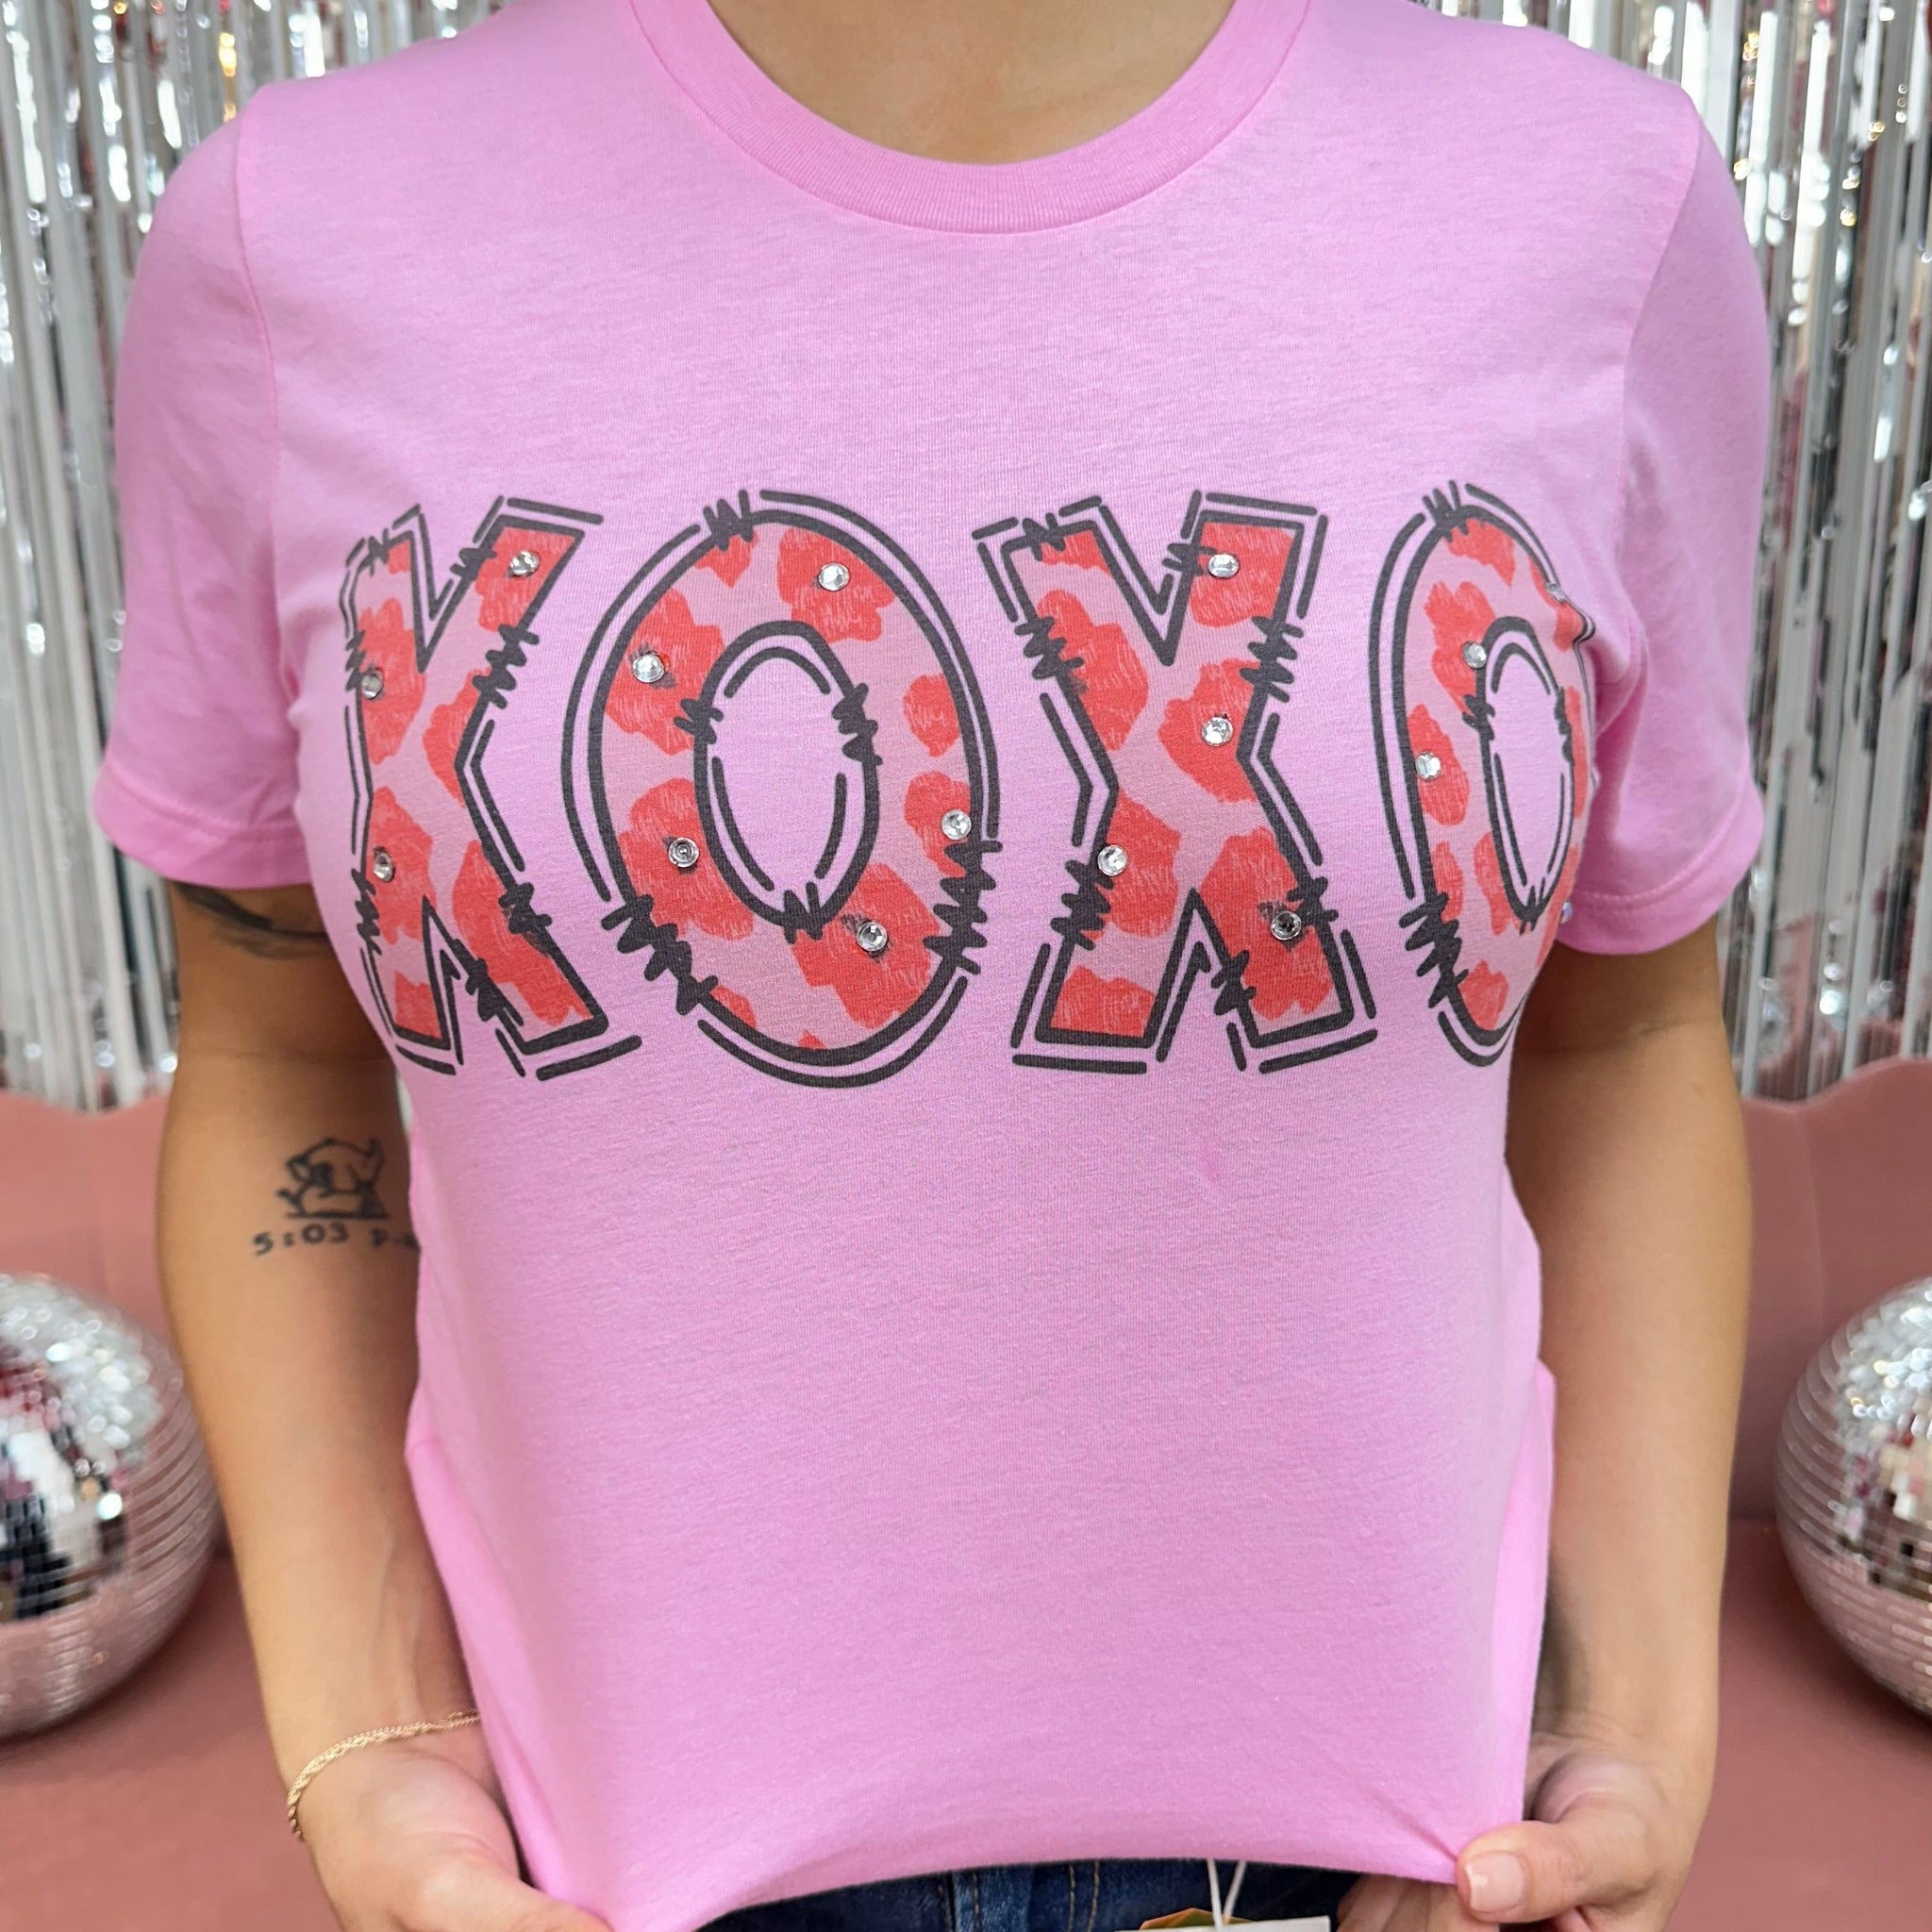 XOXO Cheetah Graphic Tee Shirt